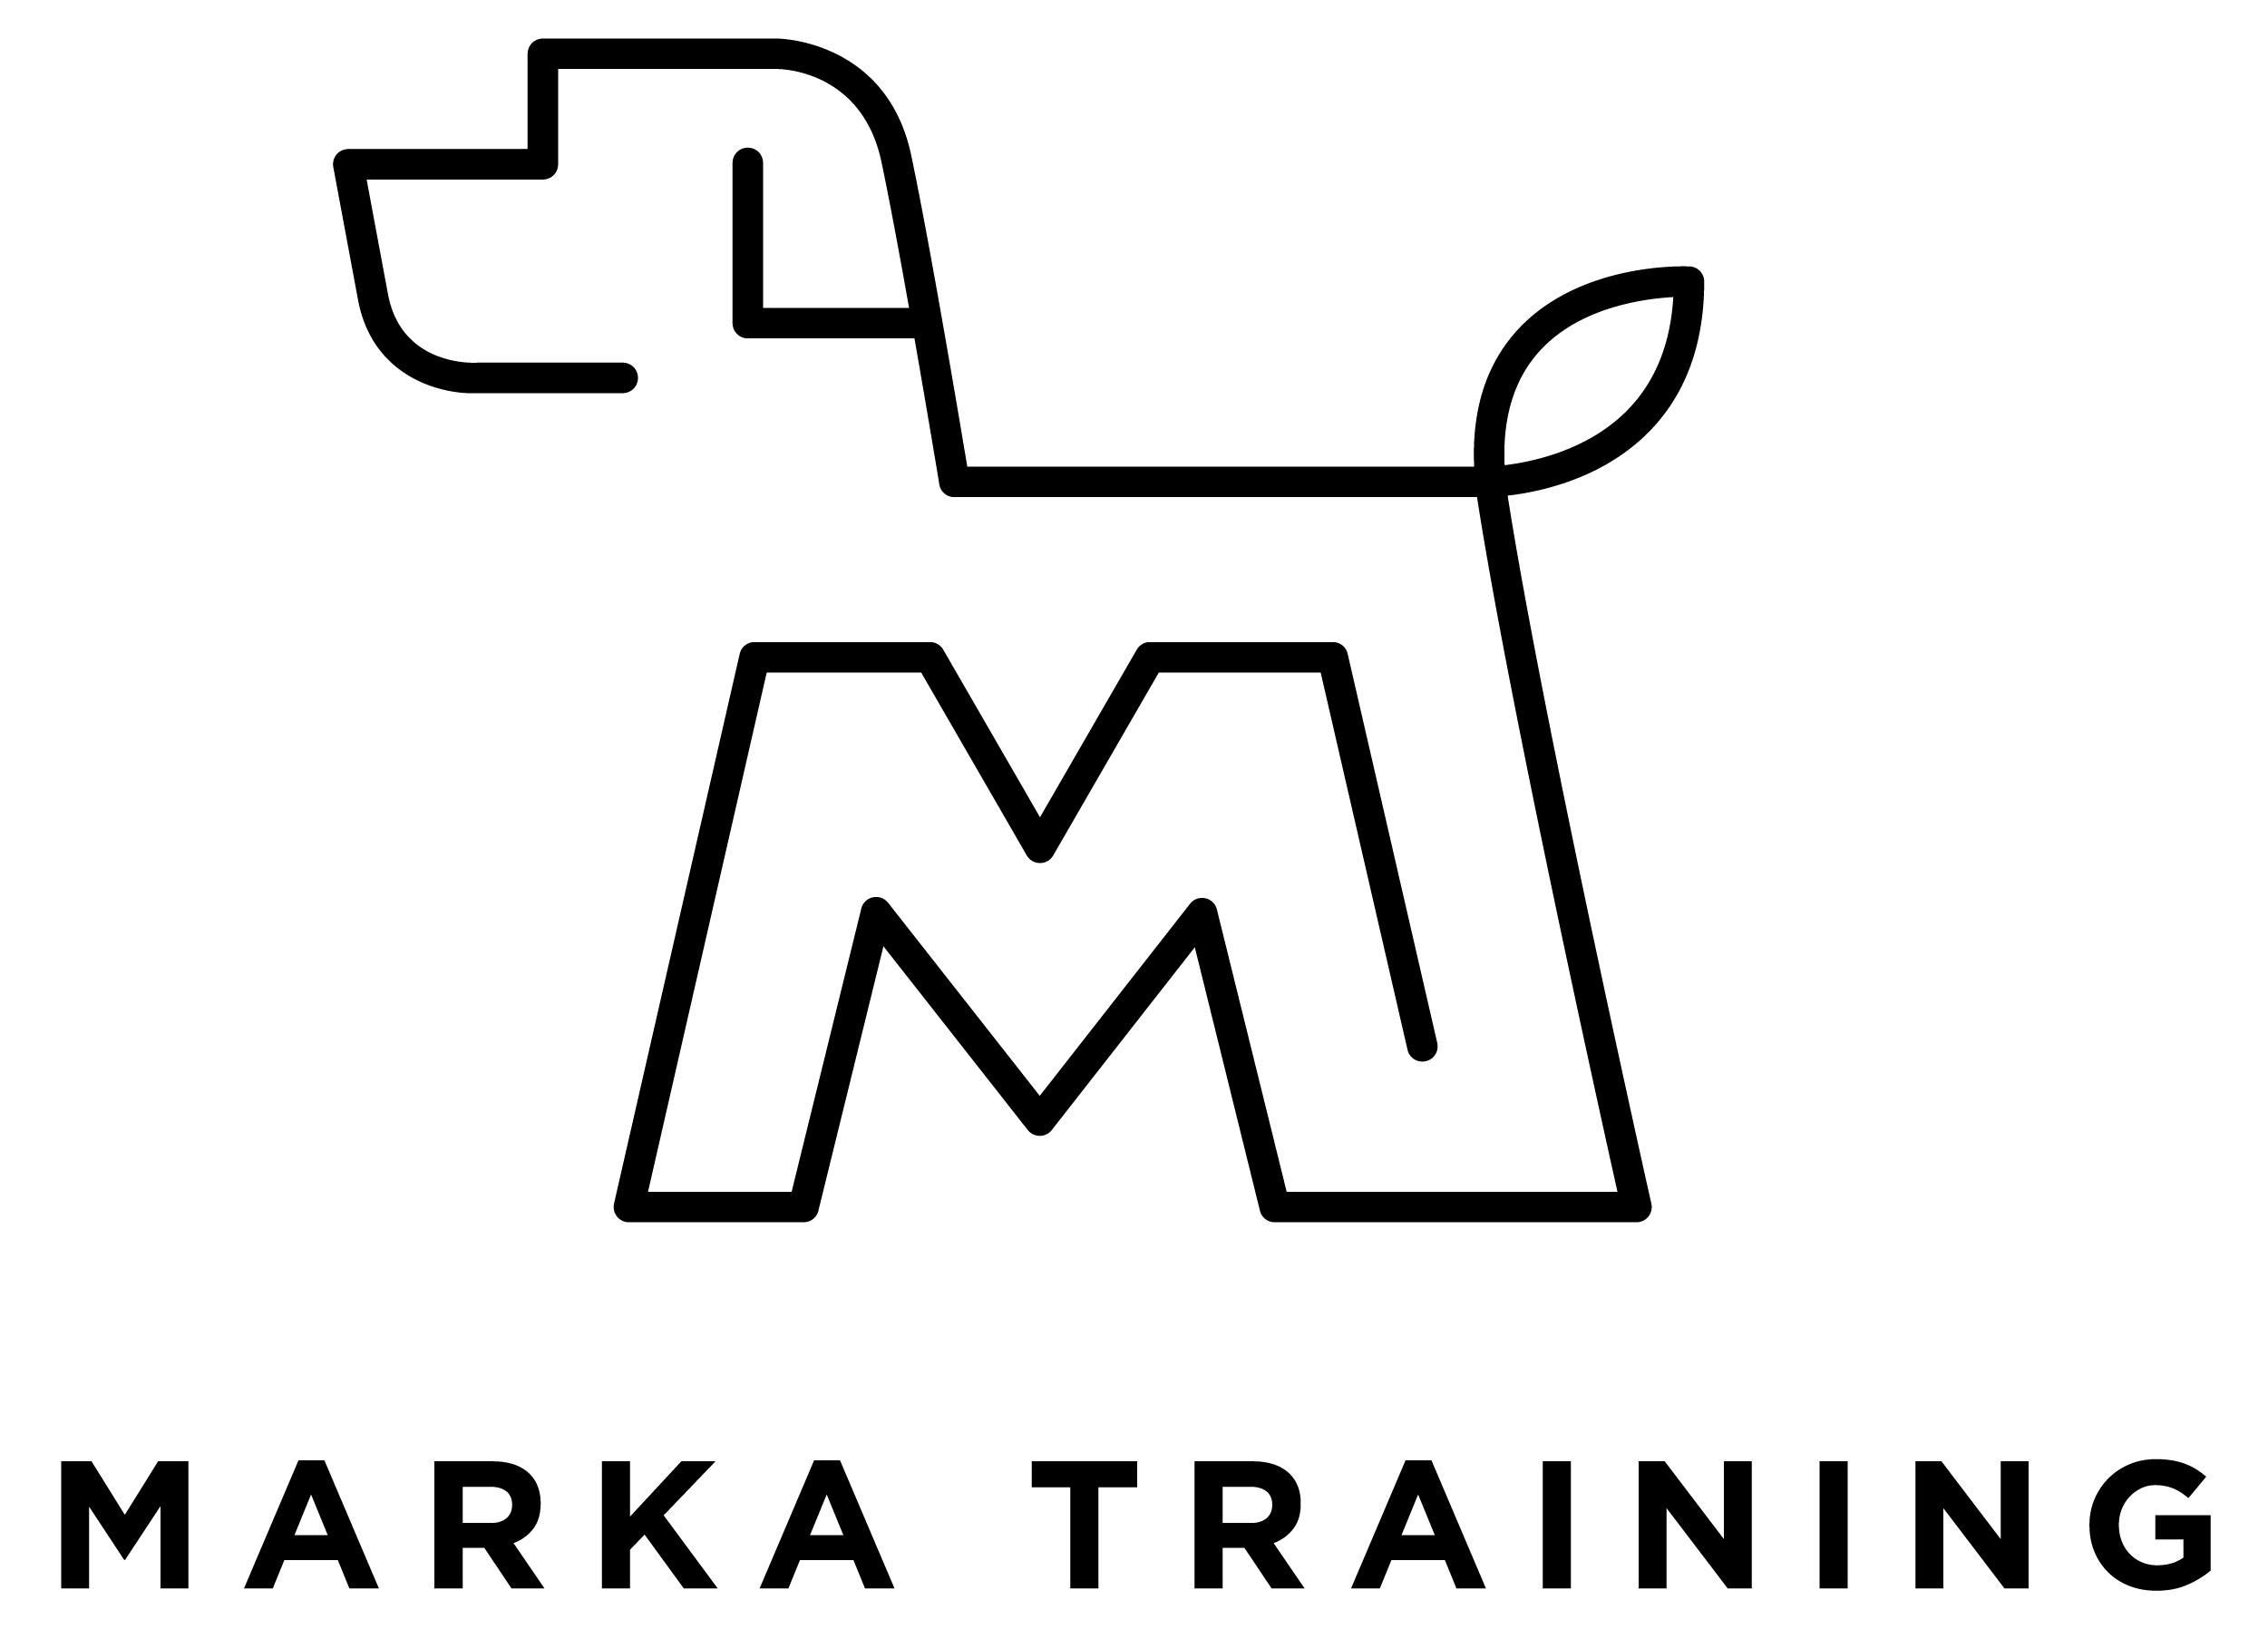 Marka dog training logo